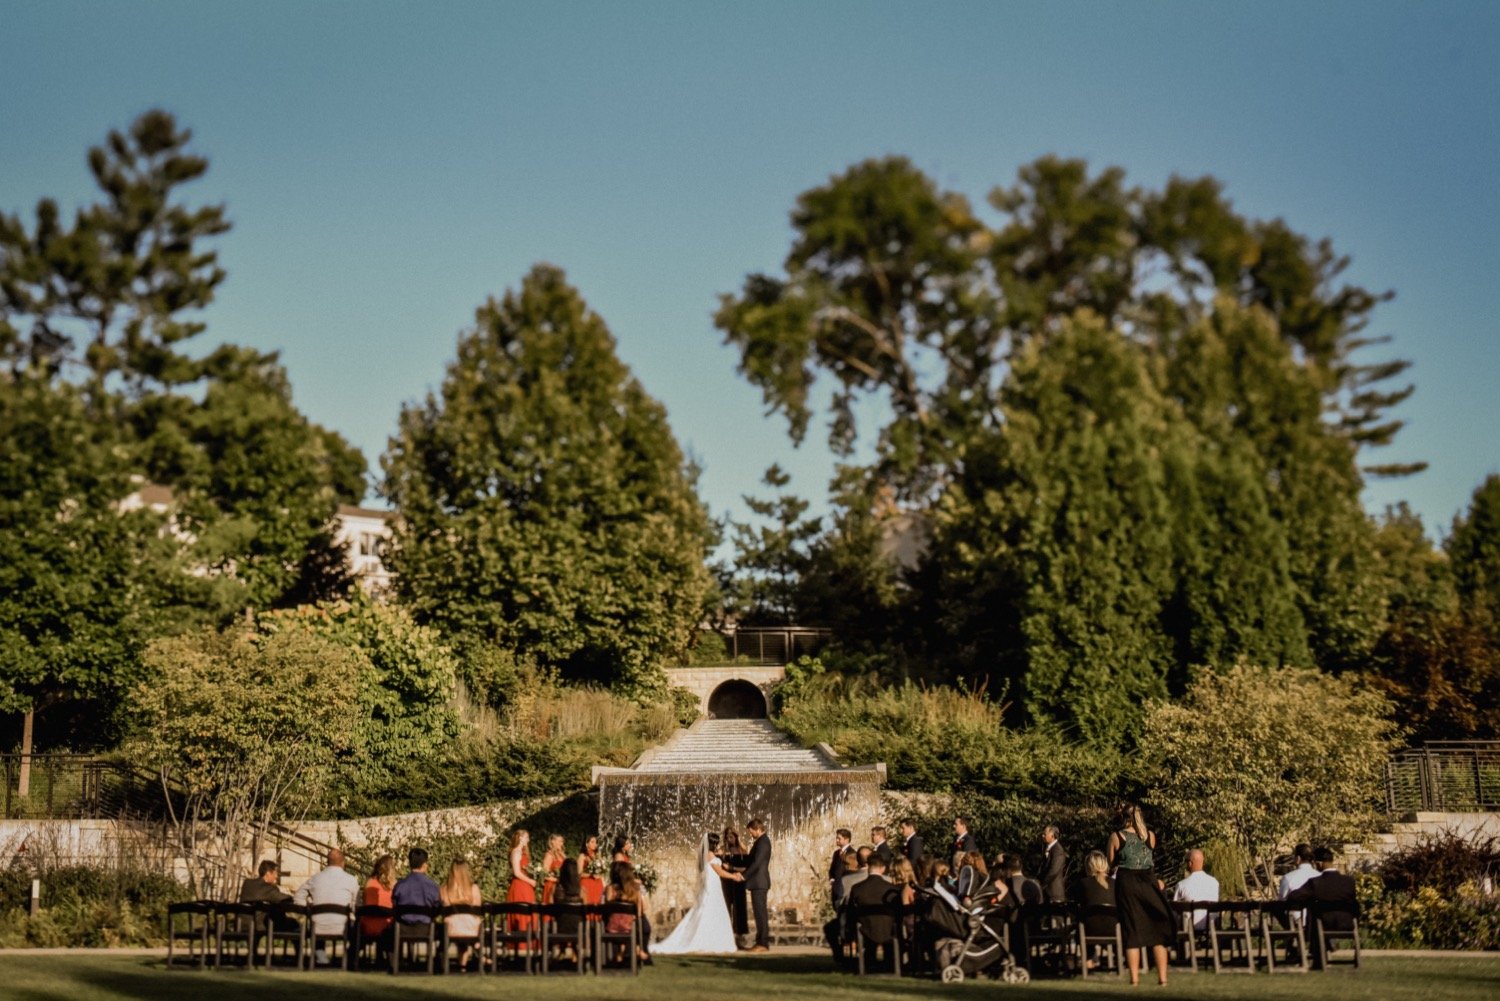 Botanical-garden-in-Des-Moines-iowa-outdoor-waterfall-wedding-ceremony-at-sunset.jpg.jpg